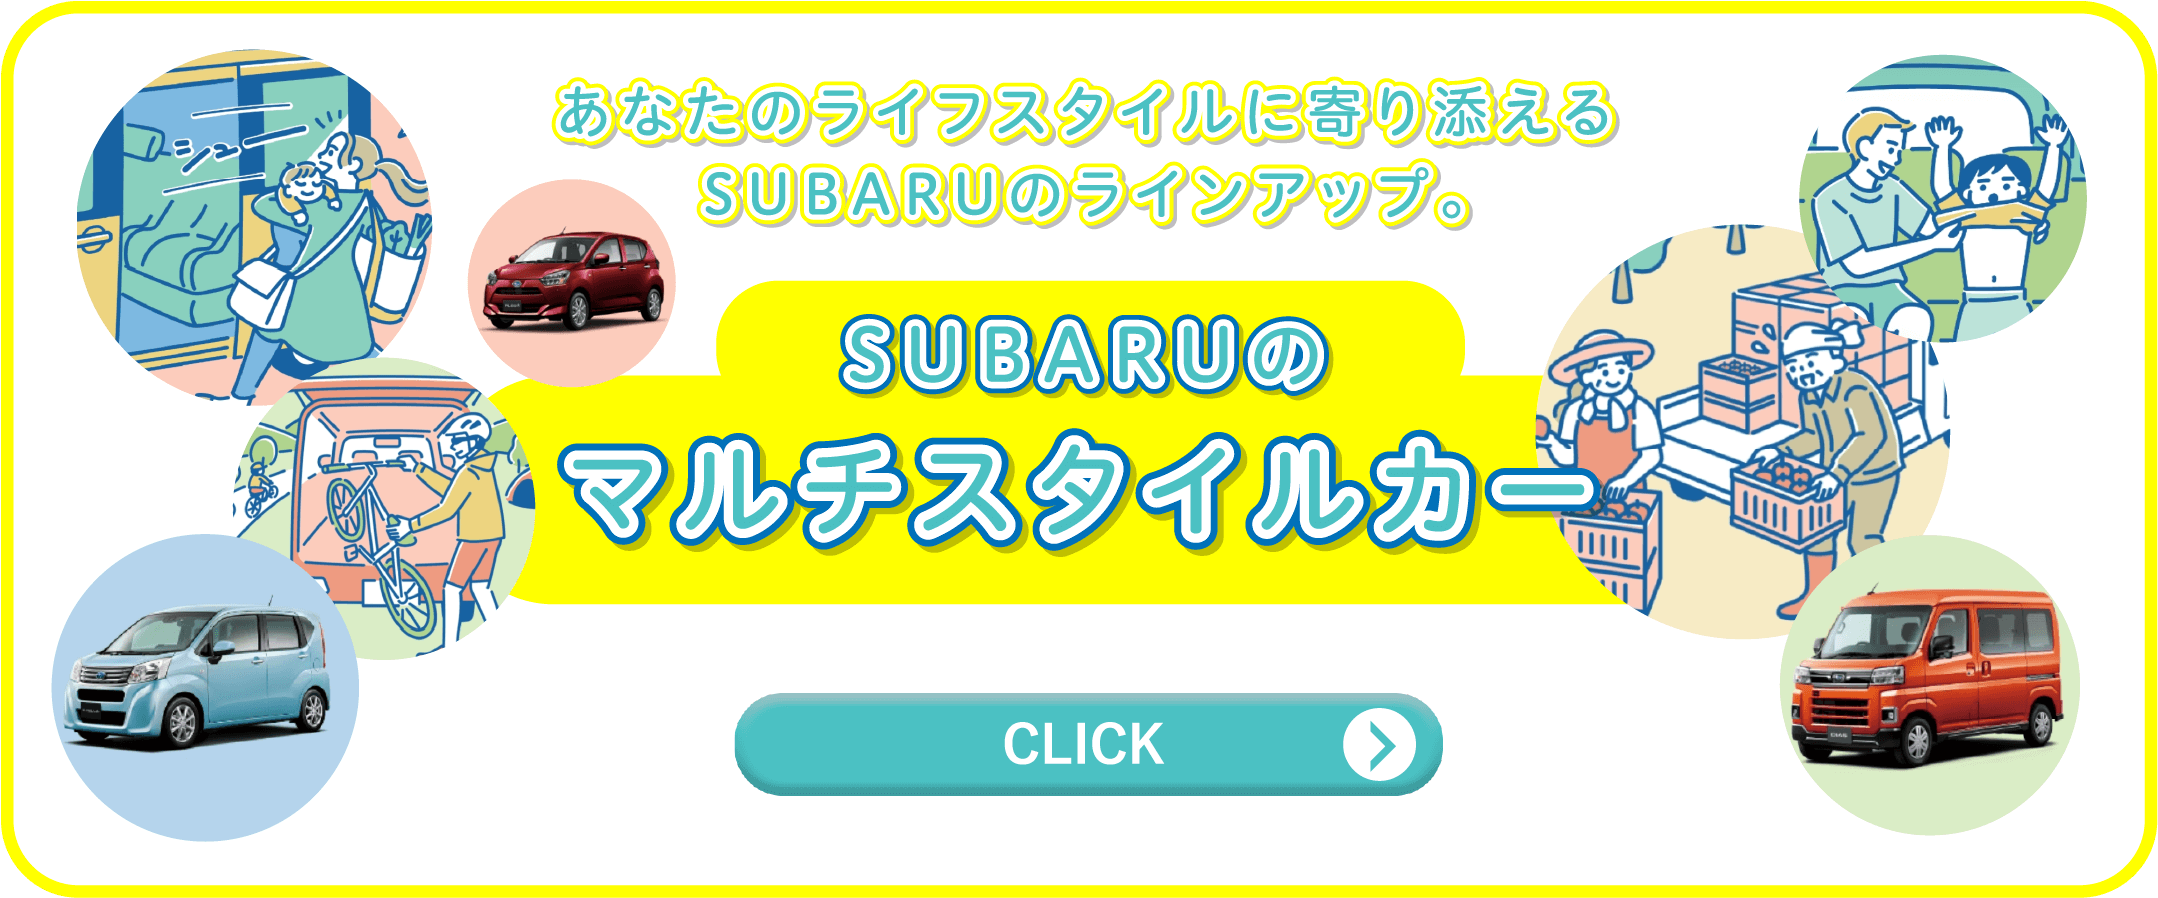 あなたのライフスタイルに寄り添えるSUBARUのラインアップ。SUBARUのマルチスタイルカー